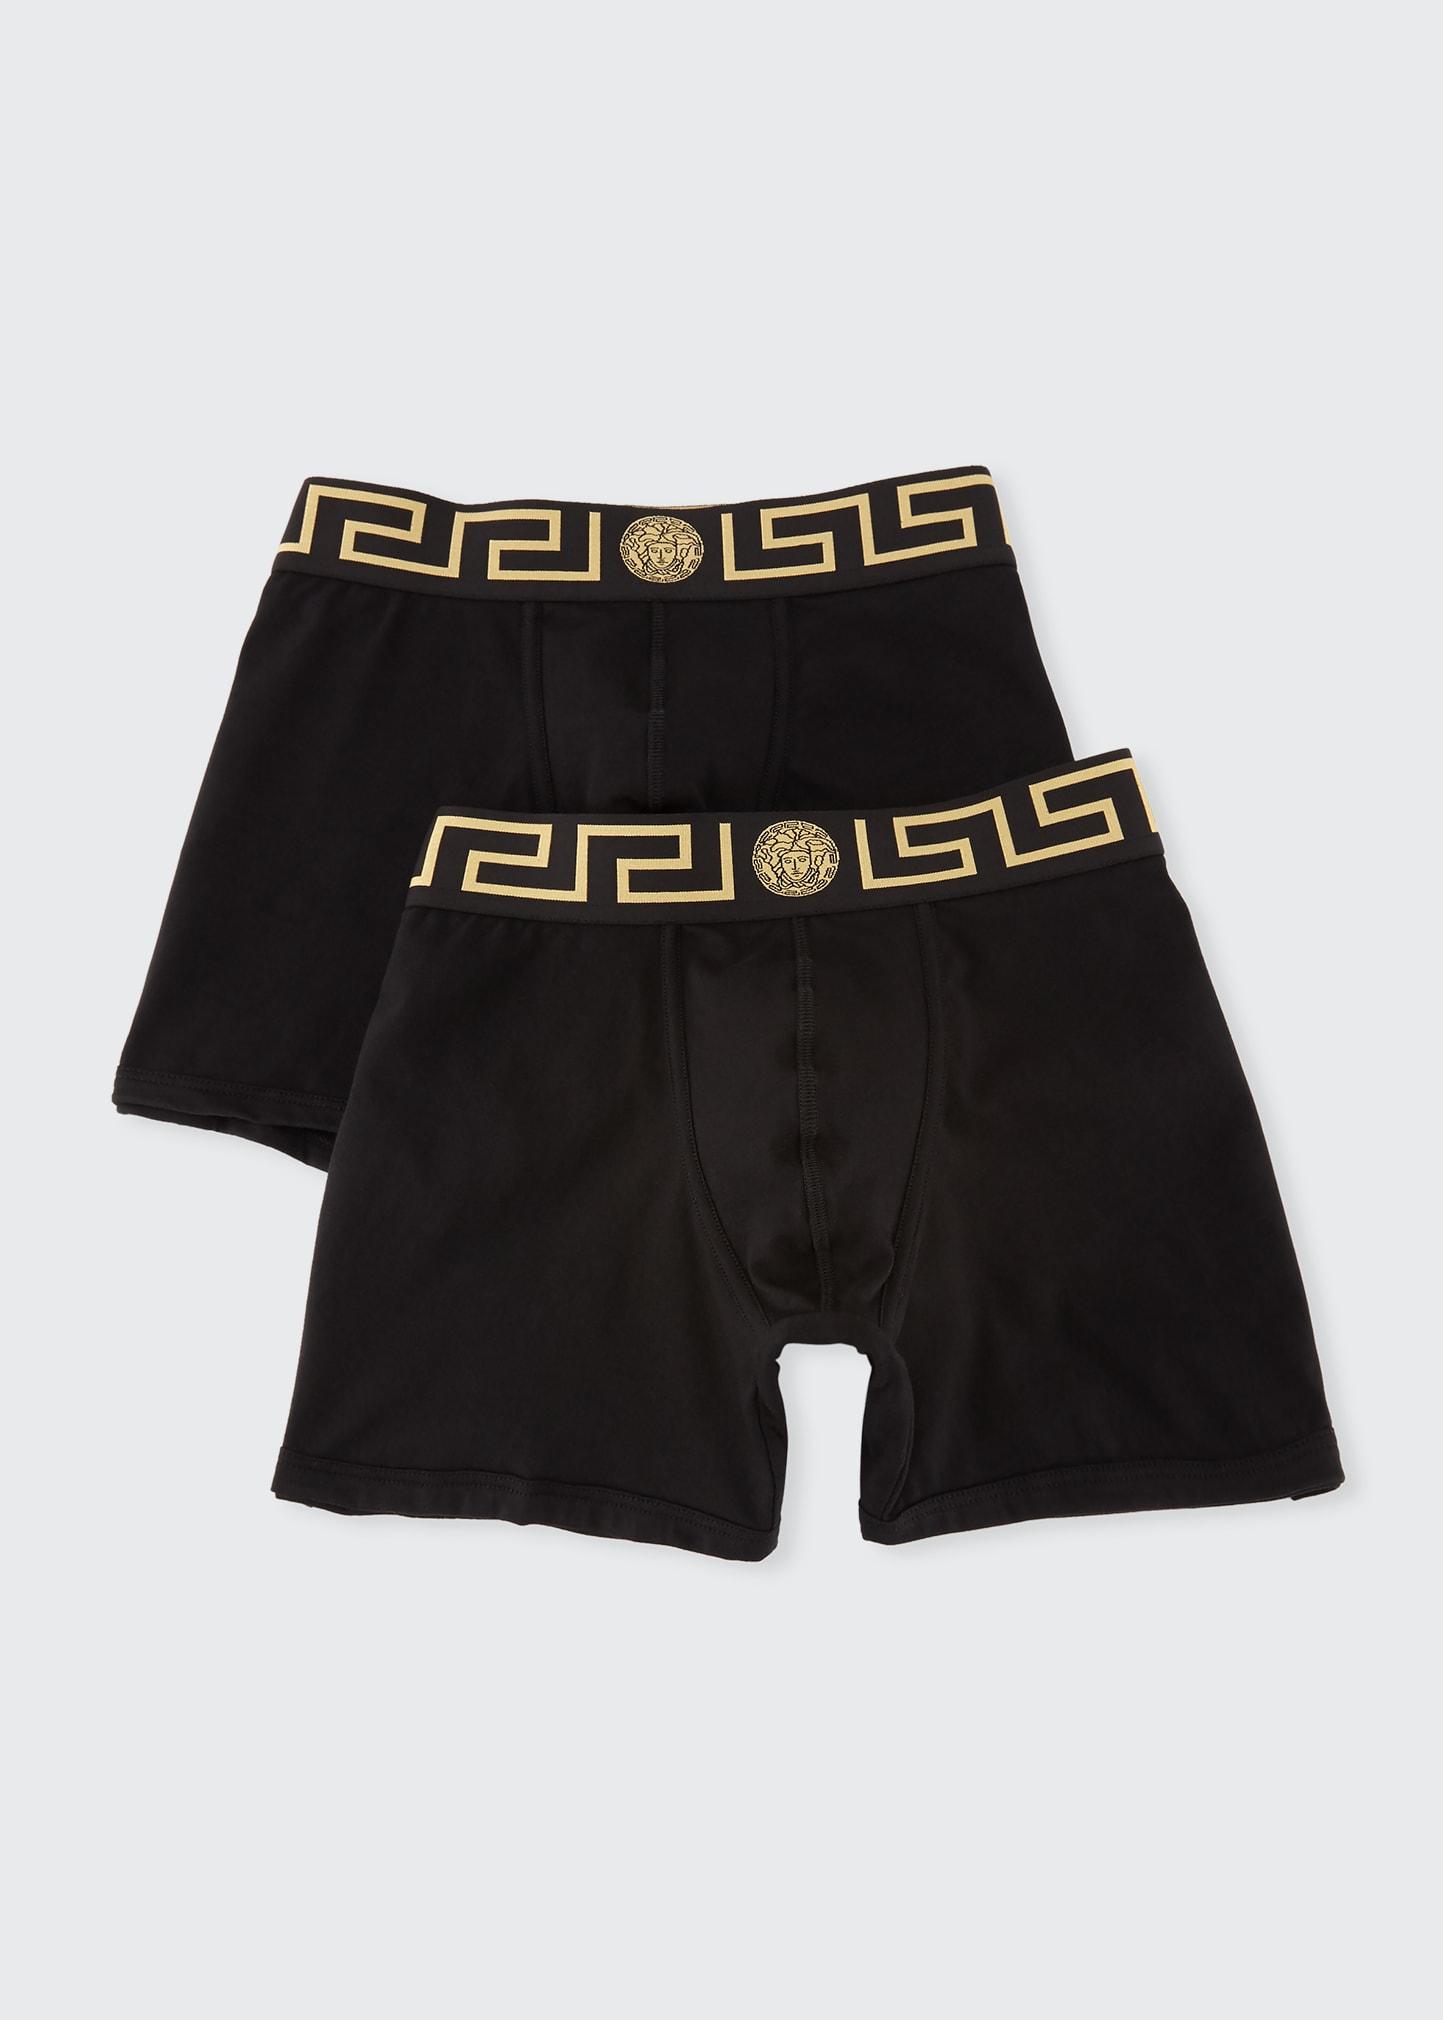 Versace Two-pack Greca Border Long Boxer Trunks in Black for Men | Lyst